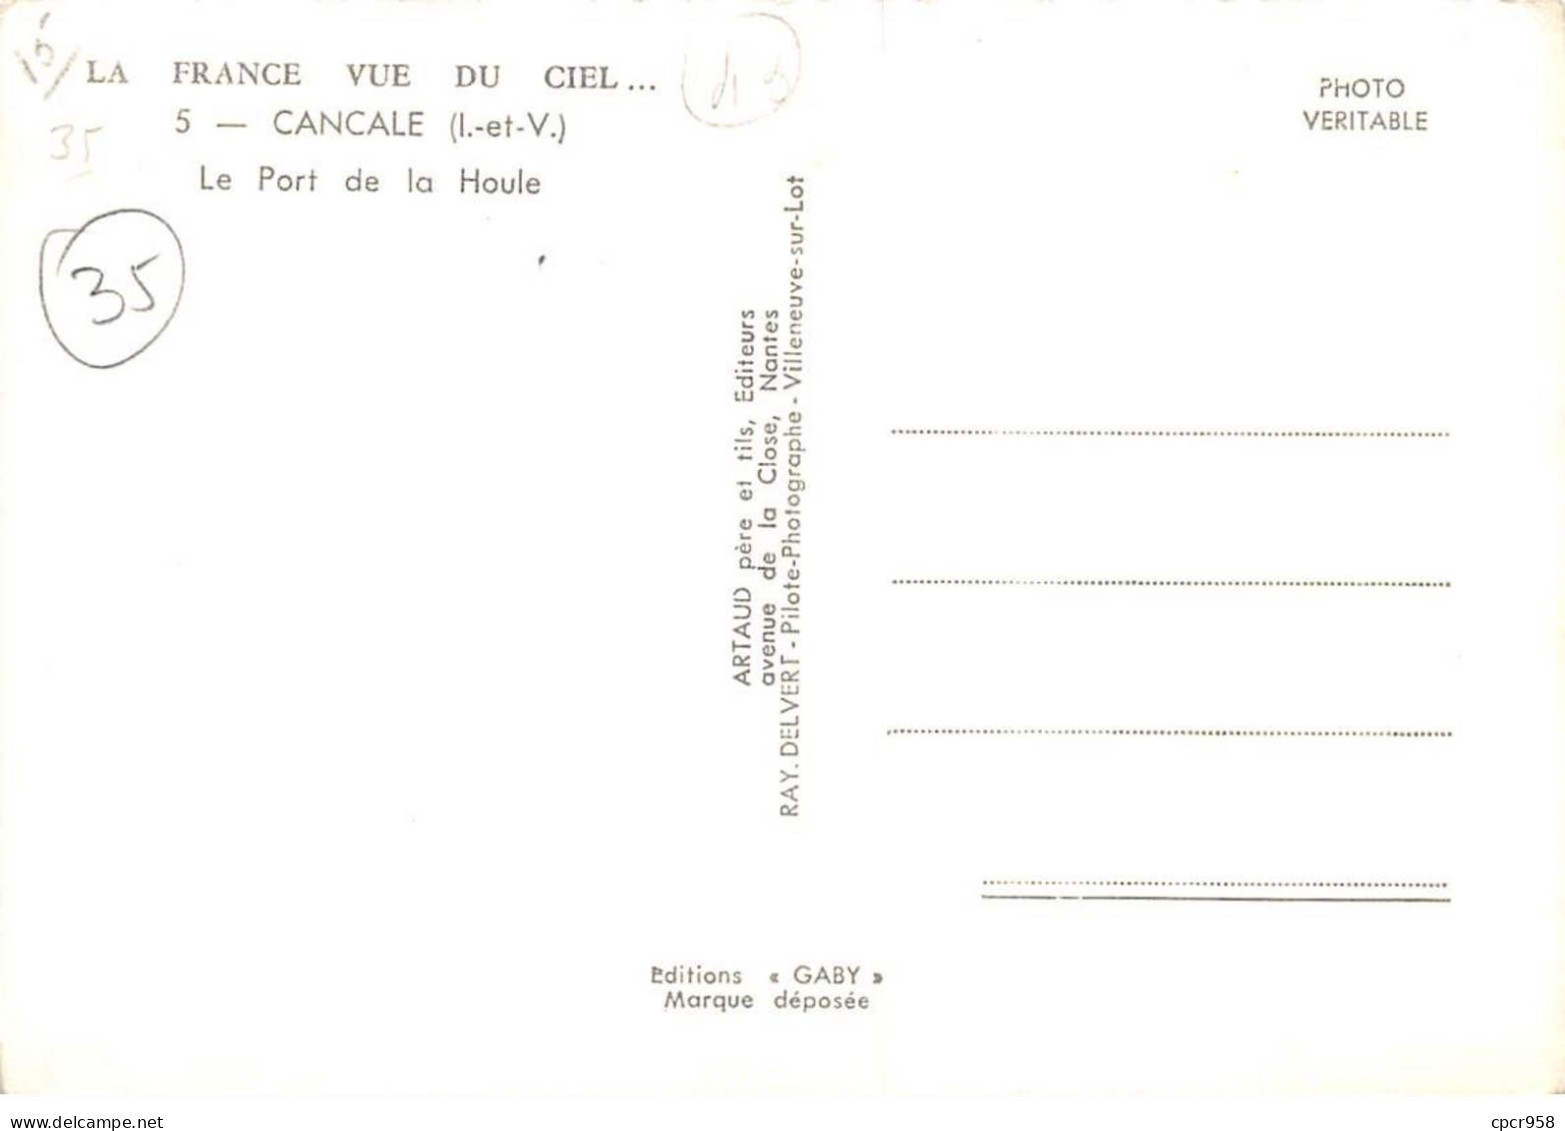 35. N° Kri10571. Cancale . Le Port De La Houle  .  N°5 . Edition Artaud  . Sm 10X15 Cm . - Cancale